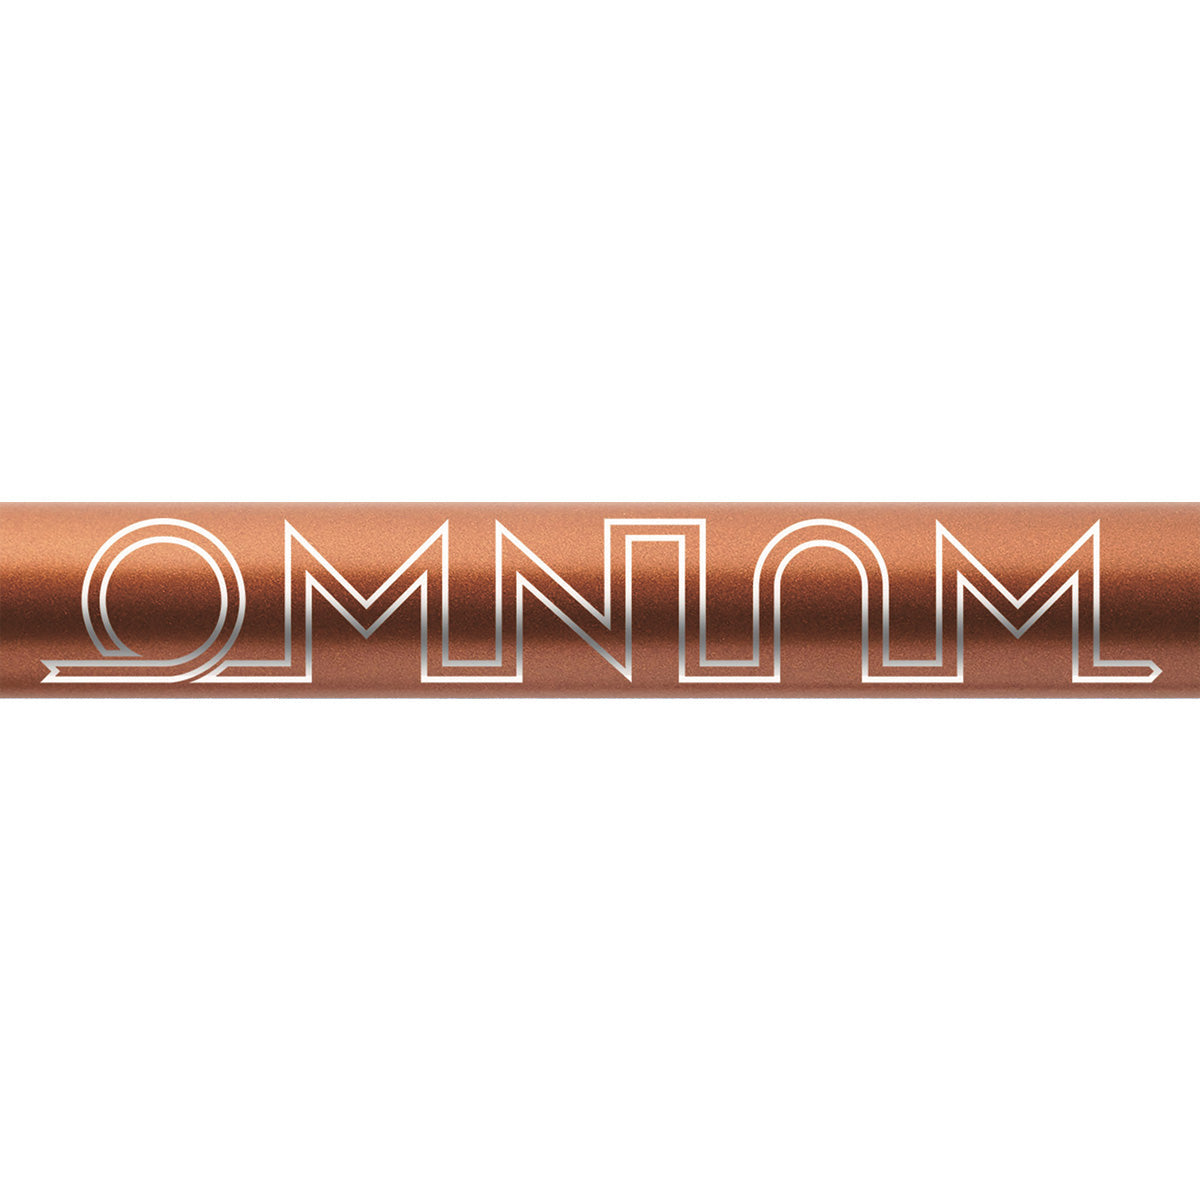 [Pre Order]OMNIUM Cargo V3 Frame Kit